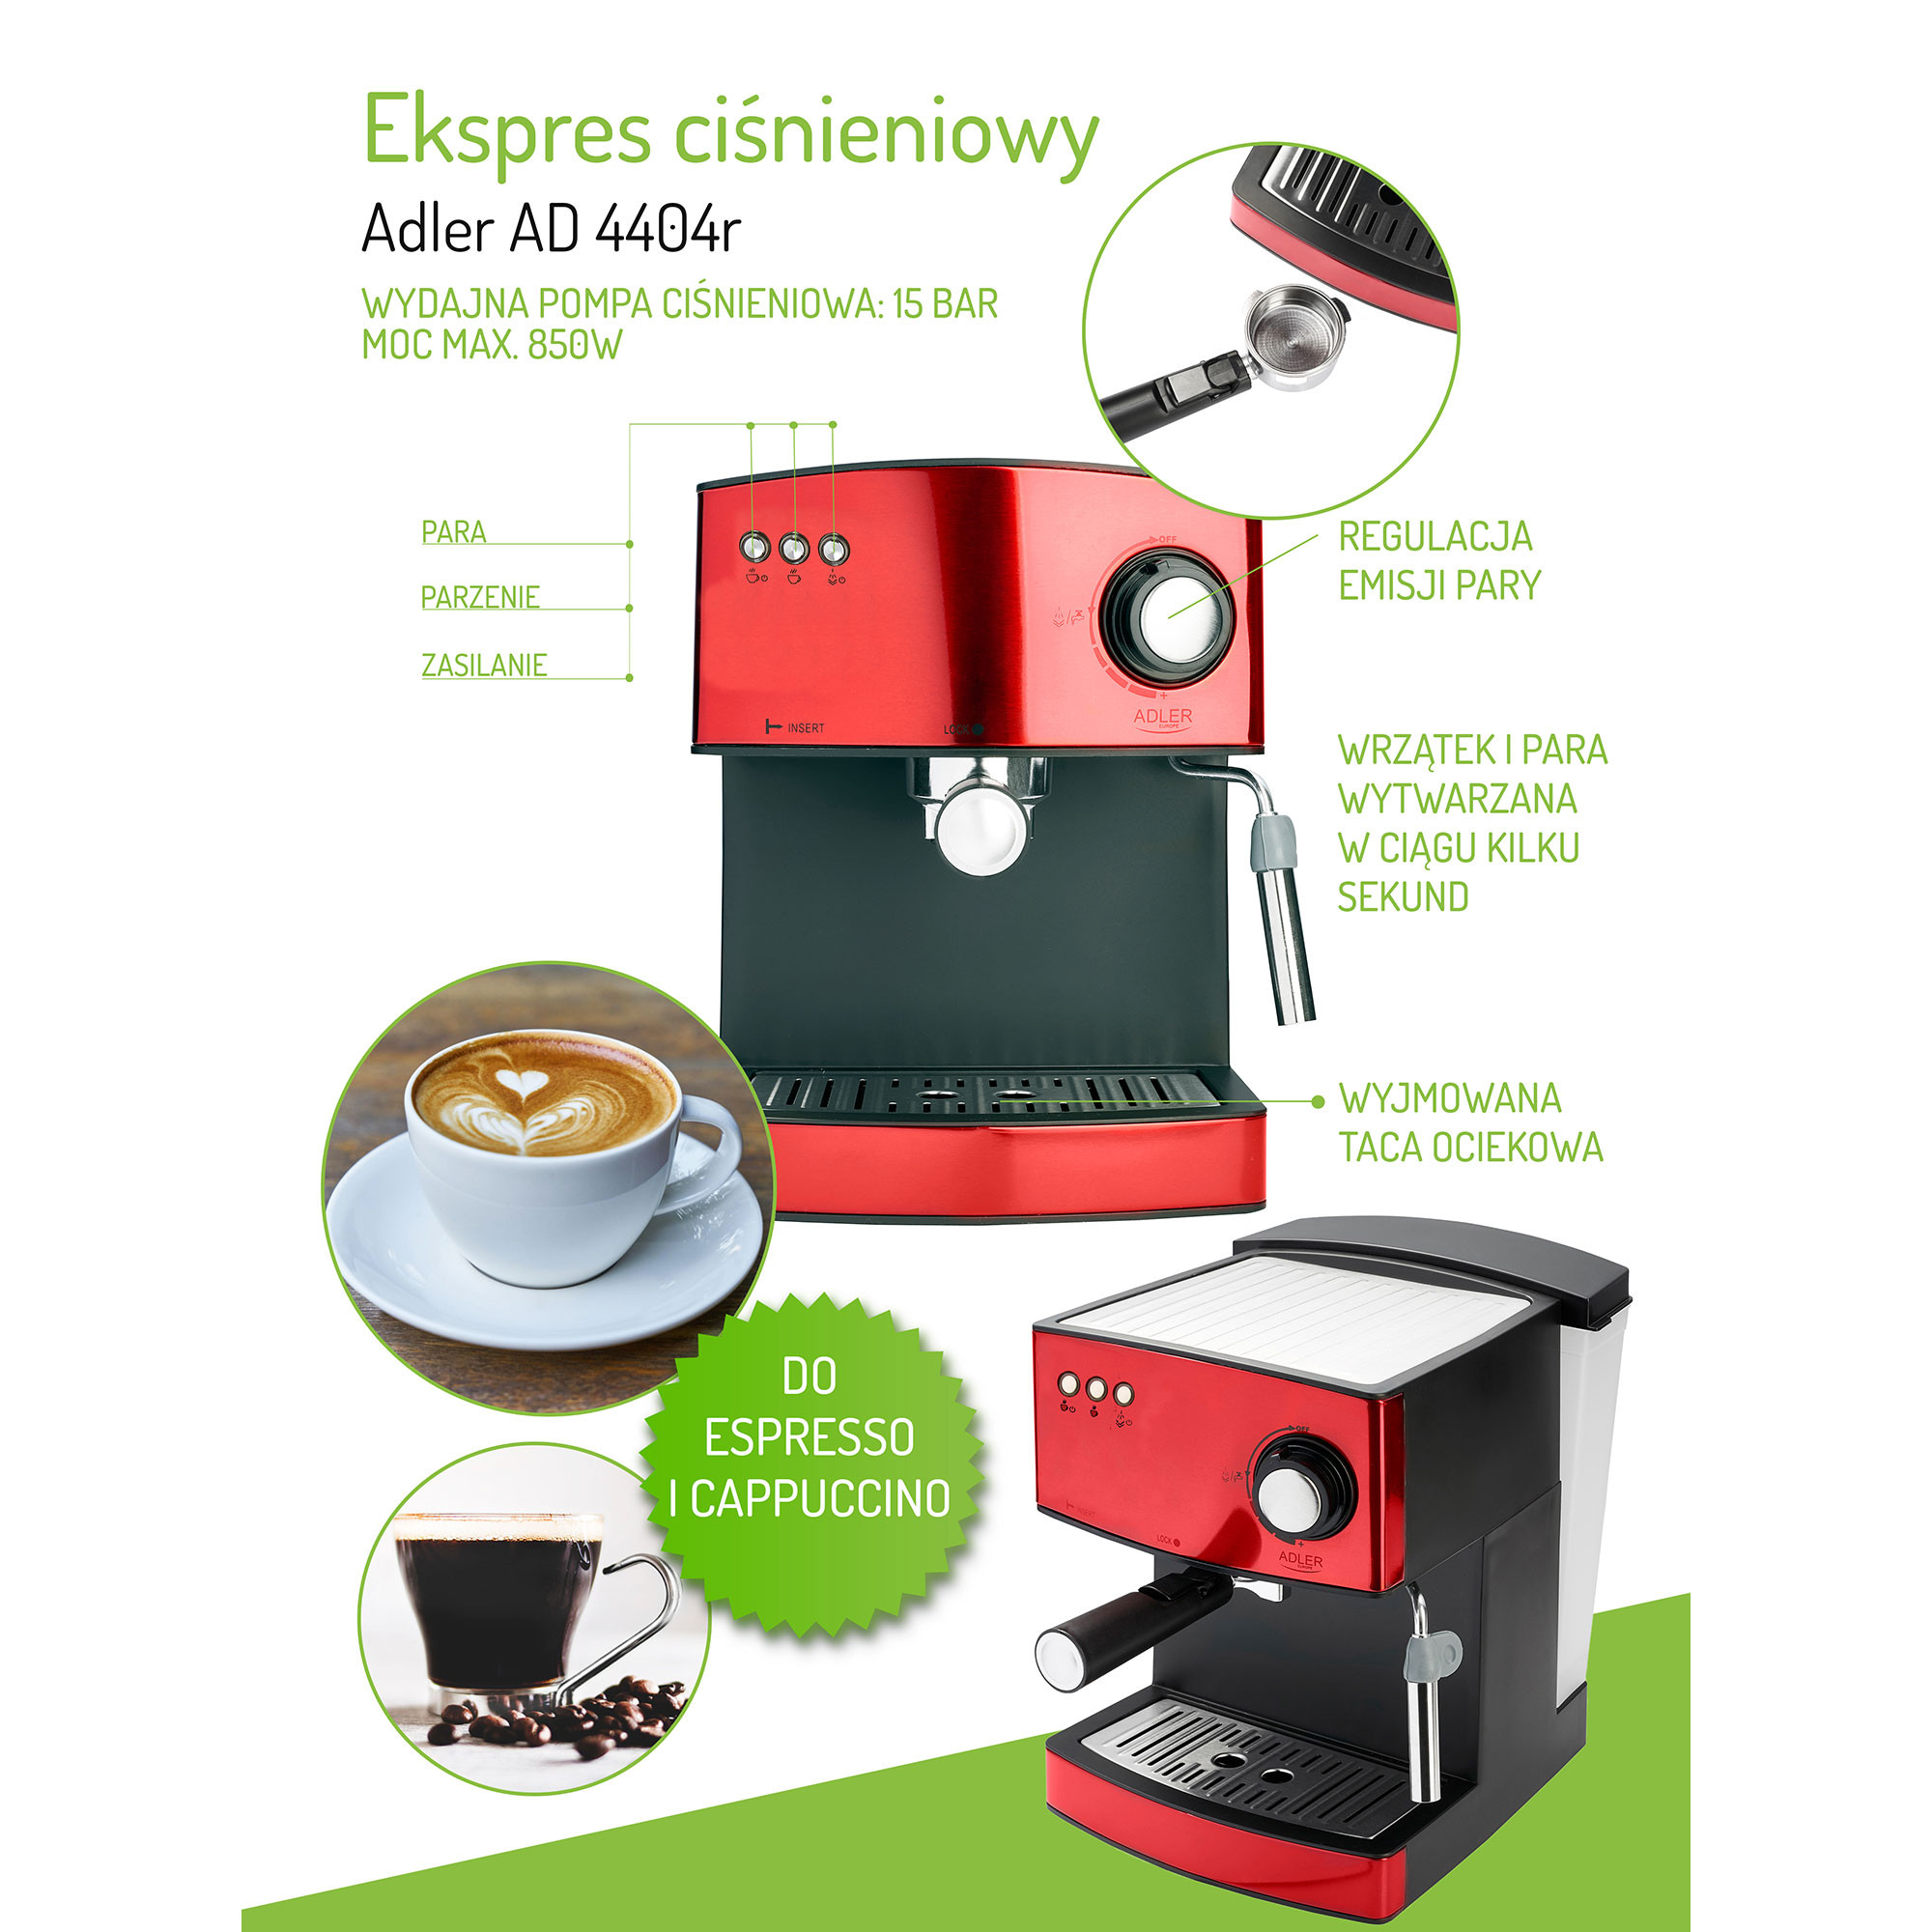 Espresso y Capuccino 850W 850 W Adler AD 4404CR Cafetera Automática 15 Bares Color Cobre Vaporizador para Espumar Leche Depósito 1,6 L para Preparar Café Latte Calienta Tazas Aluminio 